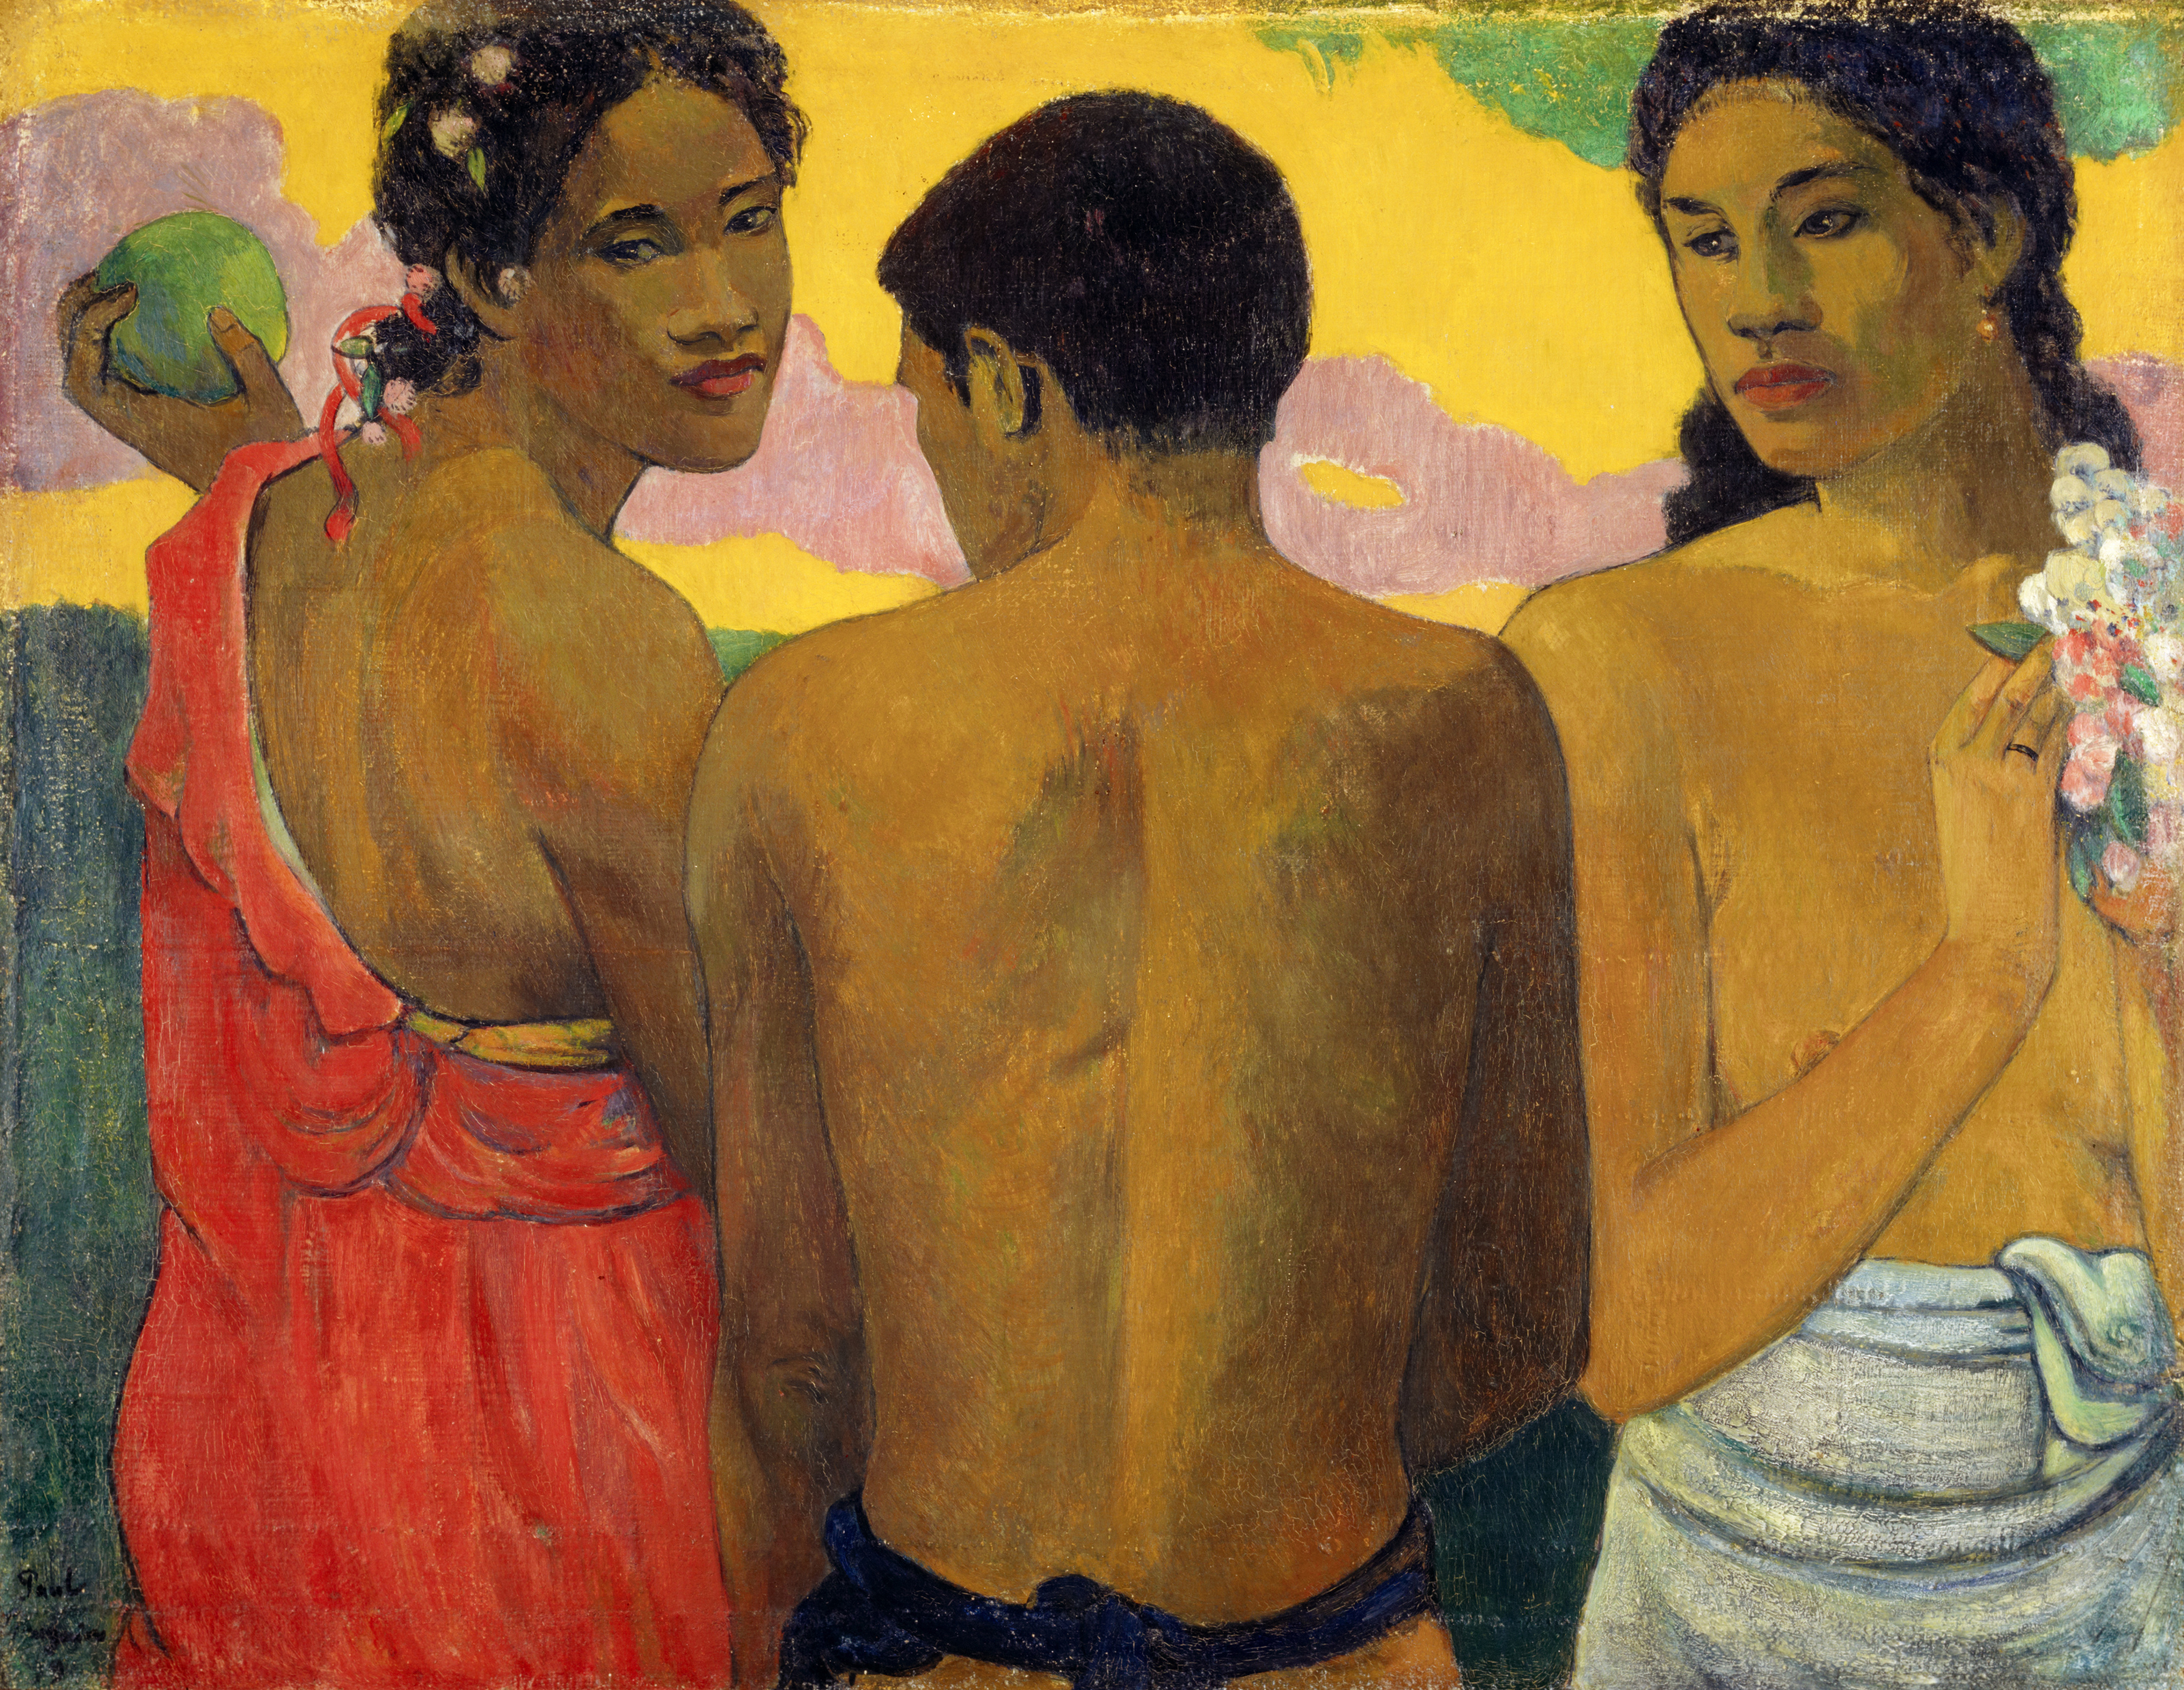 سه تاهیتی by Paul Gauguin - 1899 - 73.00 x 94.00 cm 